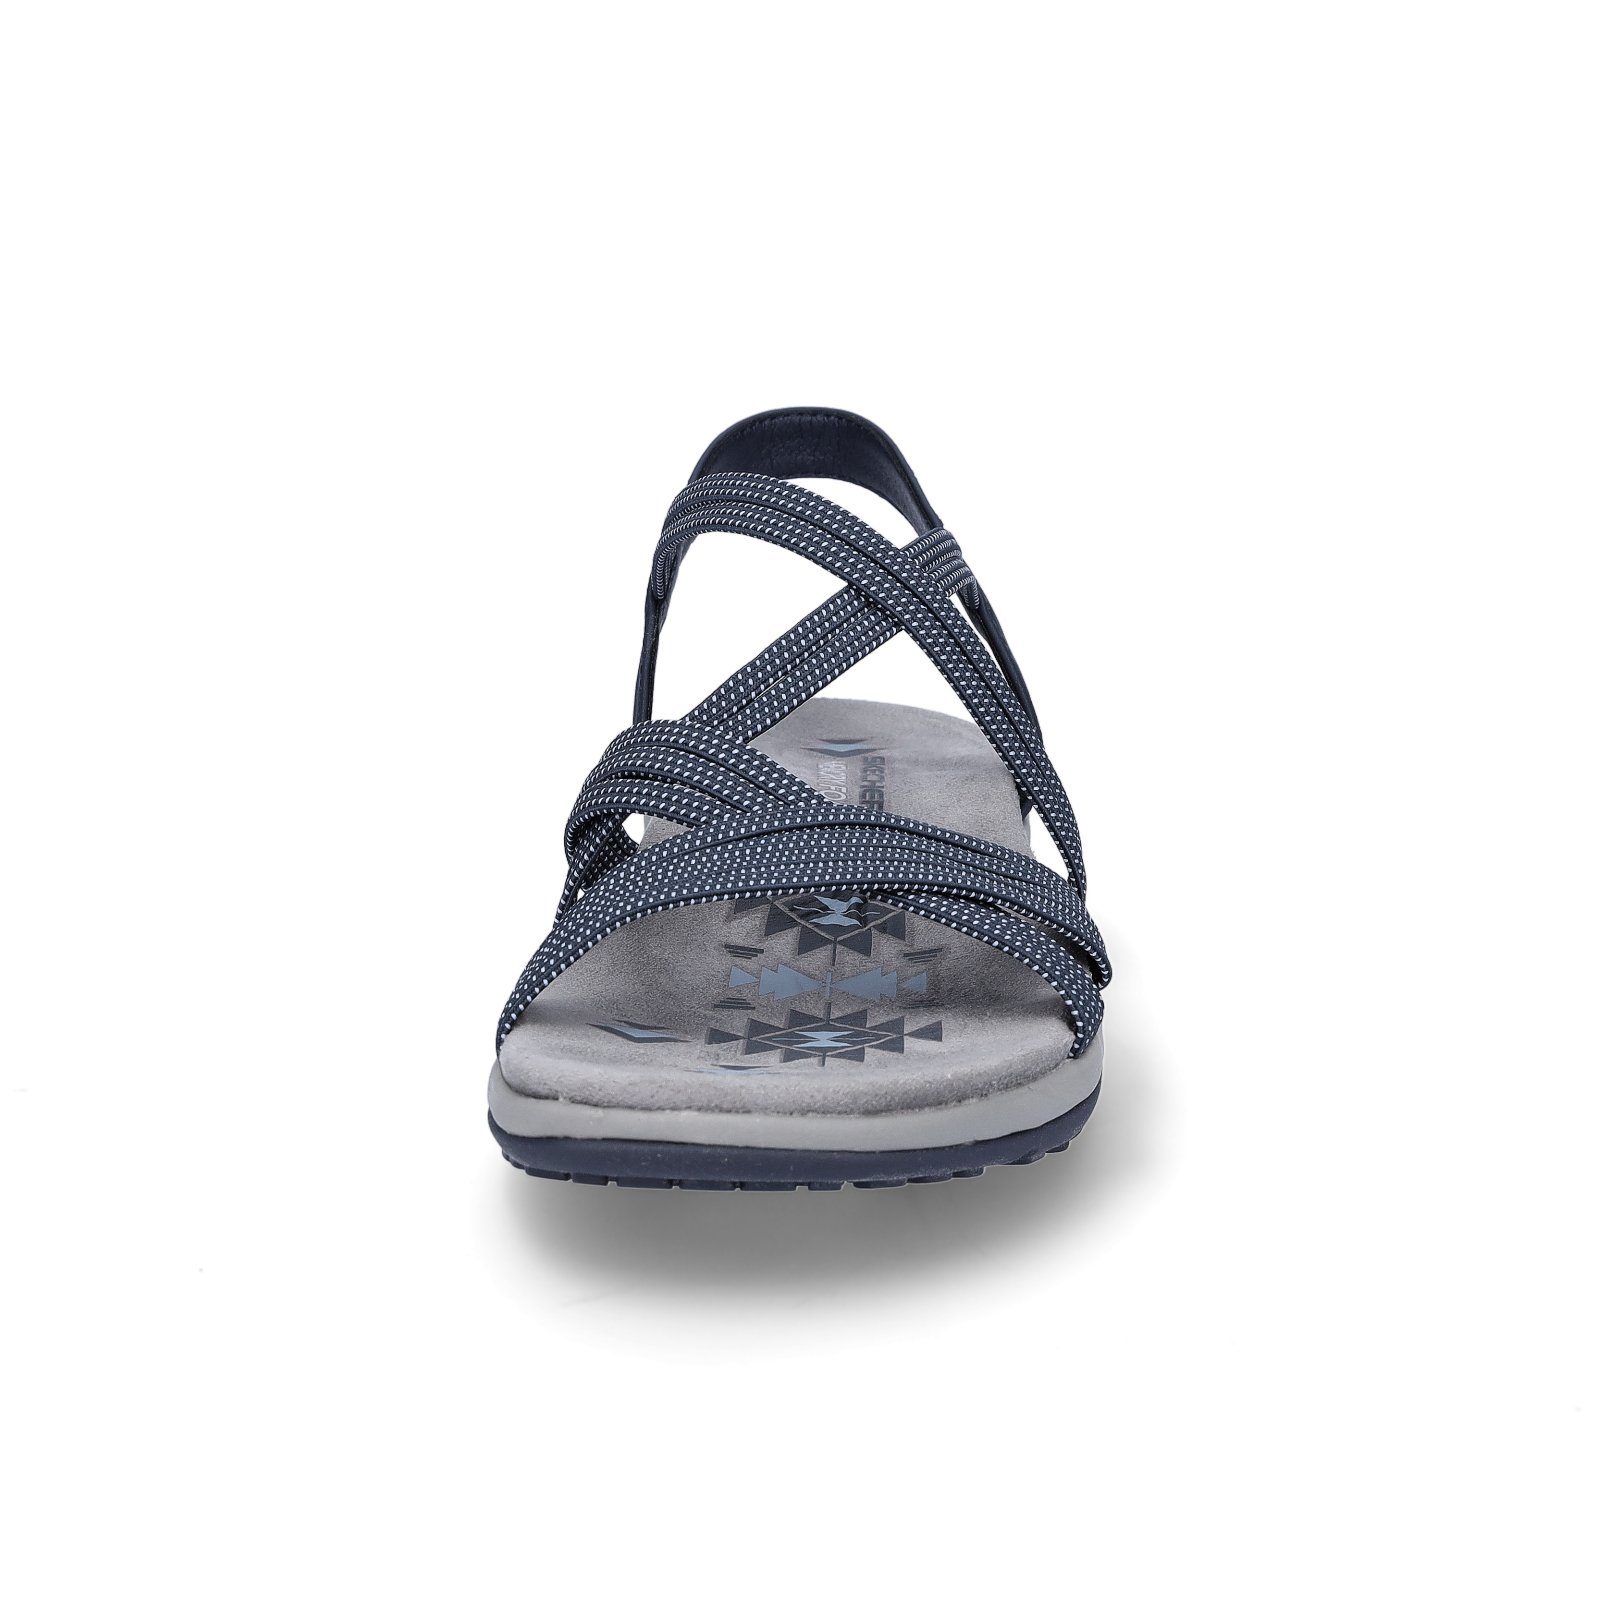 Skechers Skechers (20202745) Slim marine blau Reggae Damen Sandale Sandale Blau